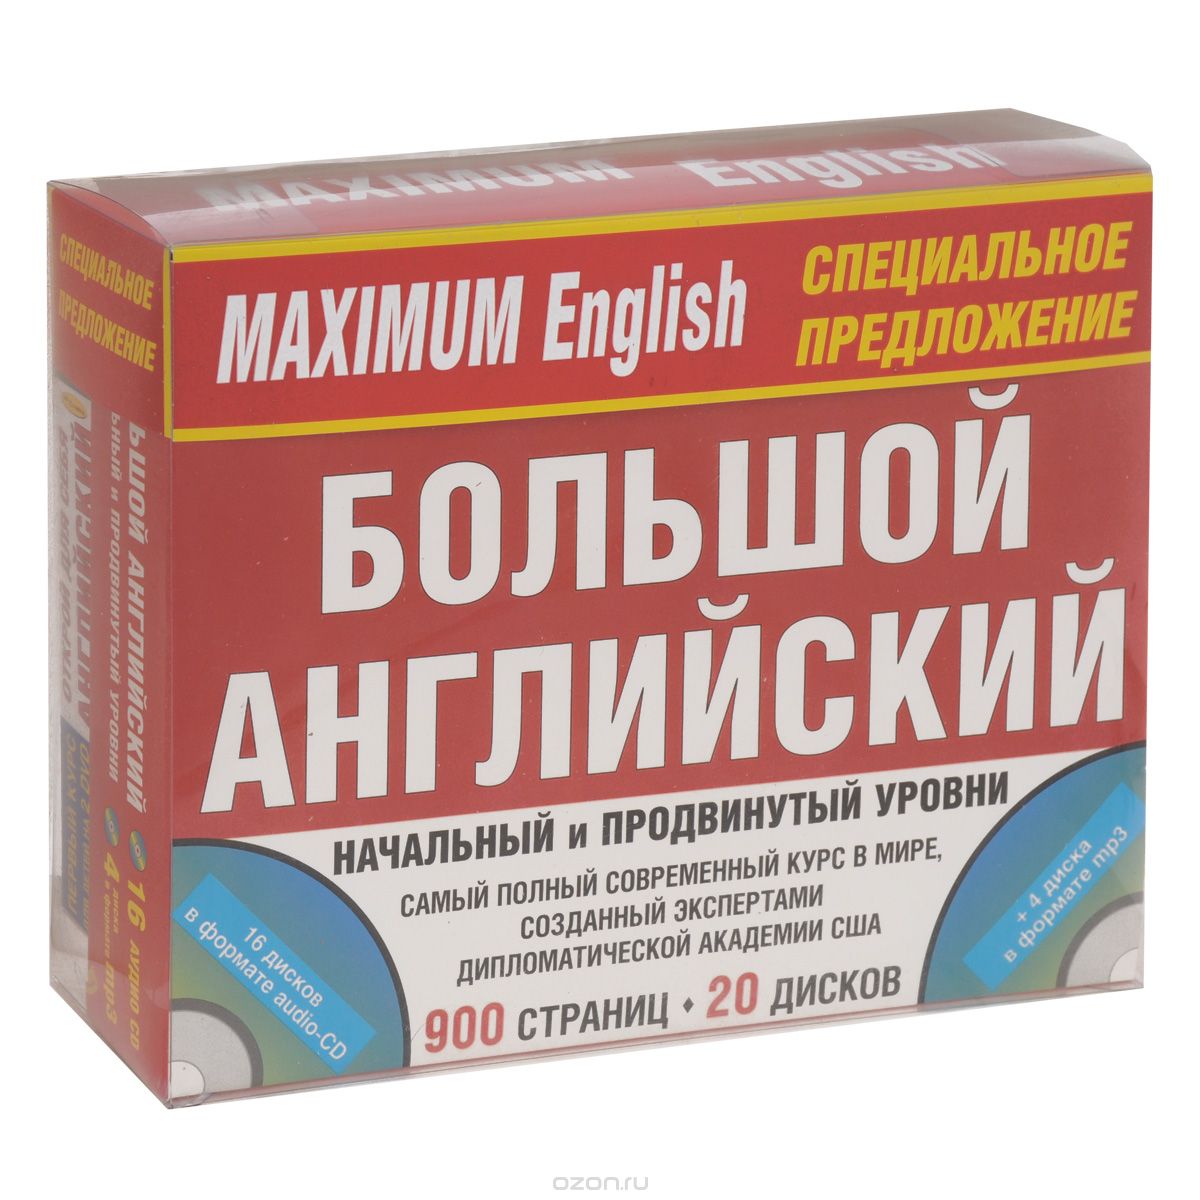 Maximum English. Комплект для общения (комплект из 3 книг + 20 CD, 2 DVD)